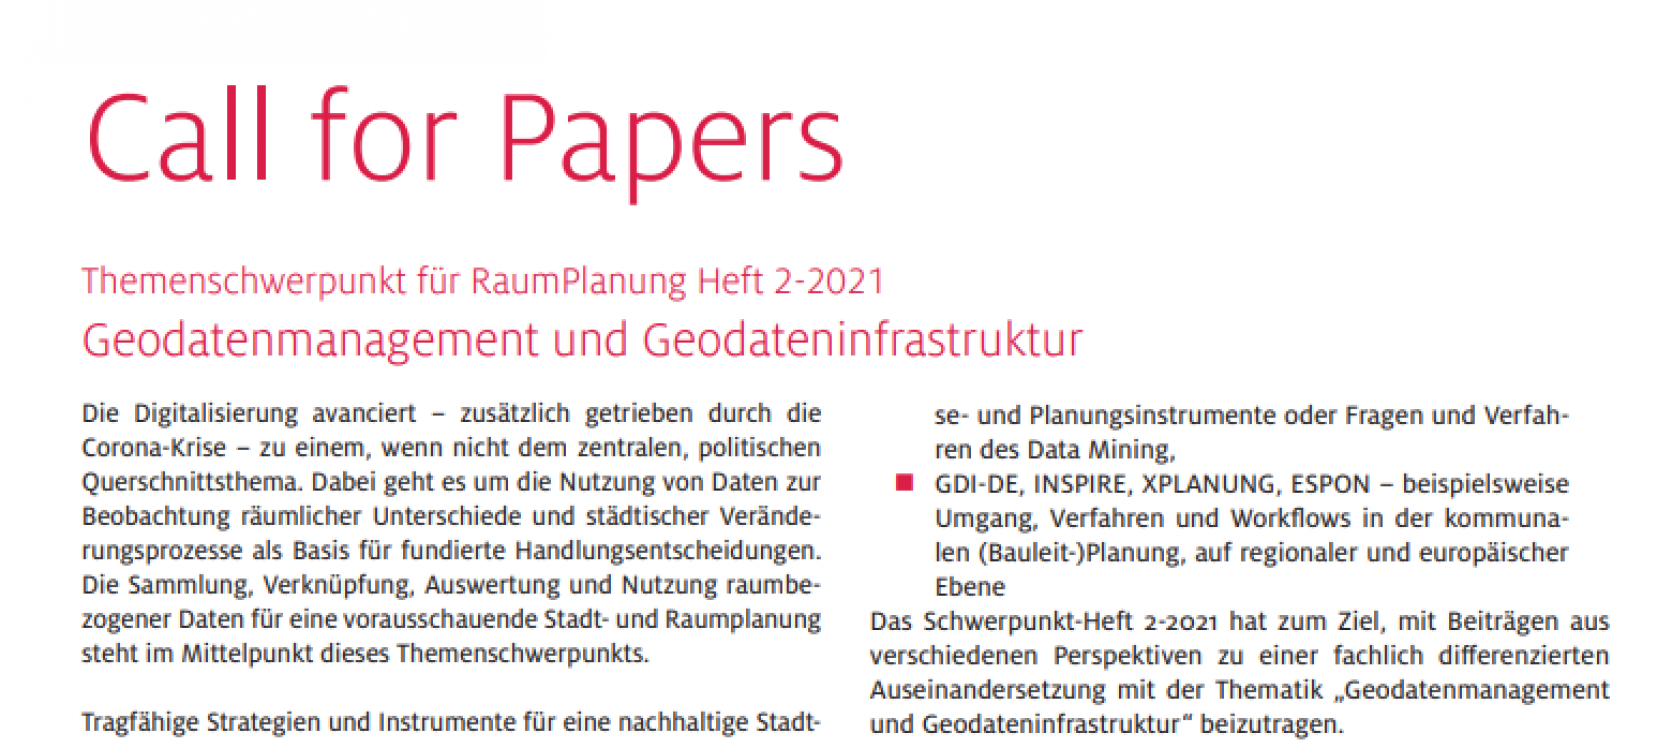 Call for Papers: Geodatenmanagement und Geodateninfrastruktur